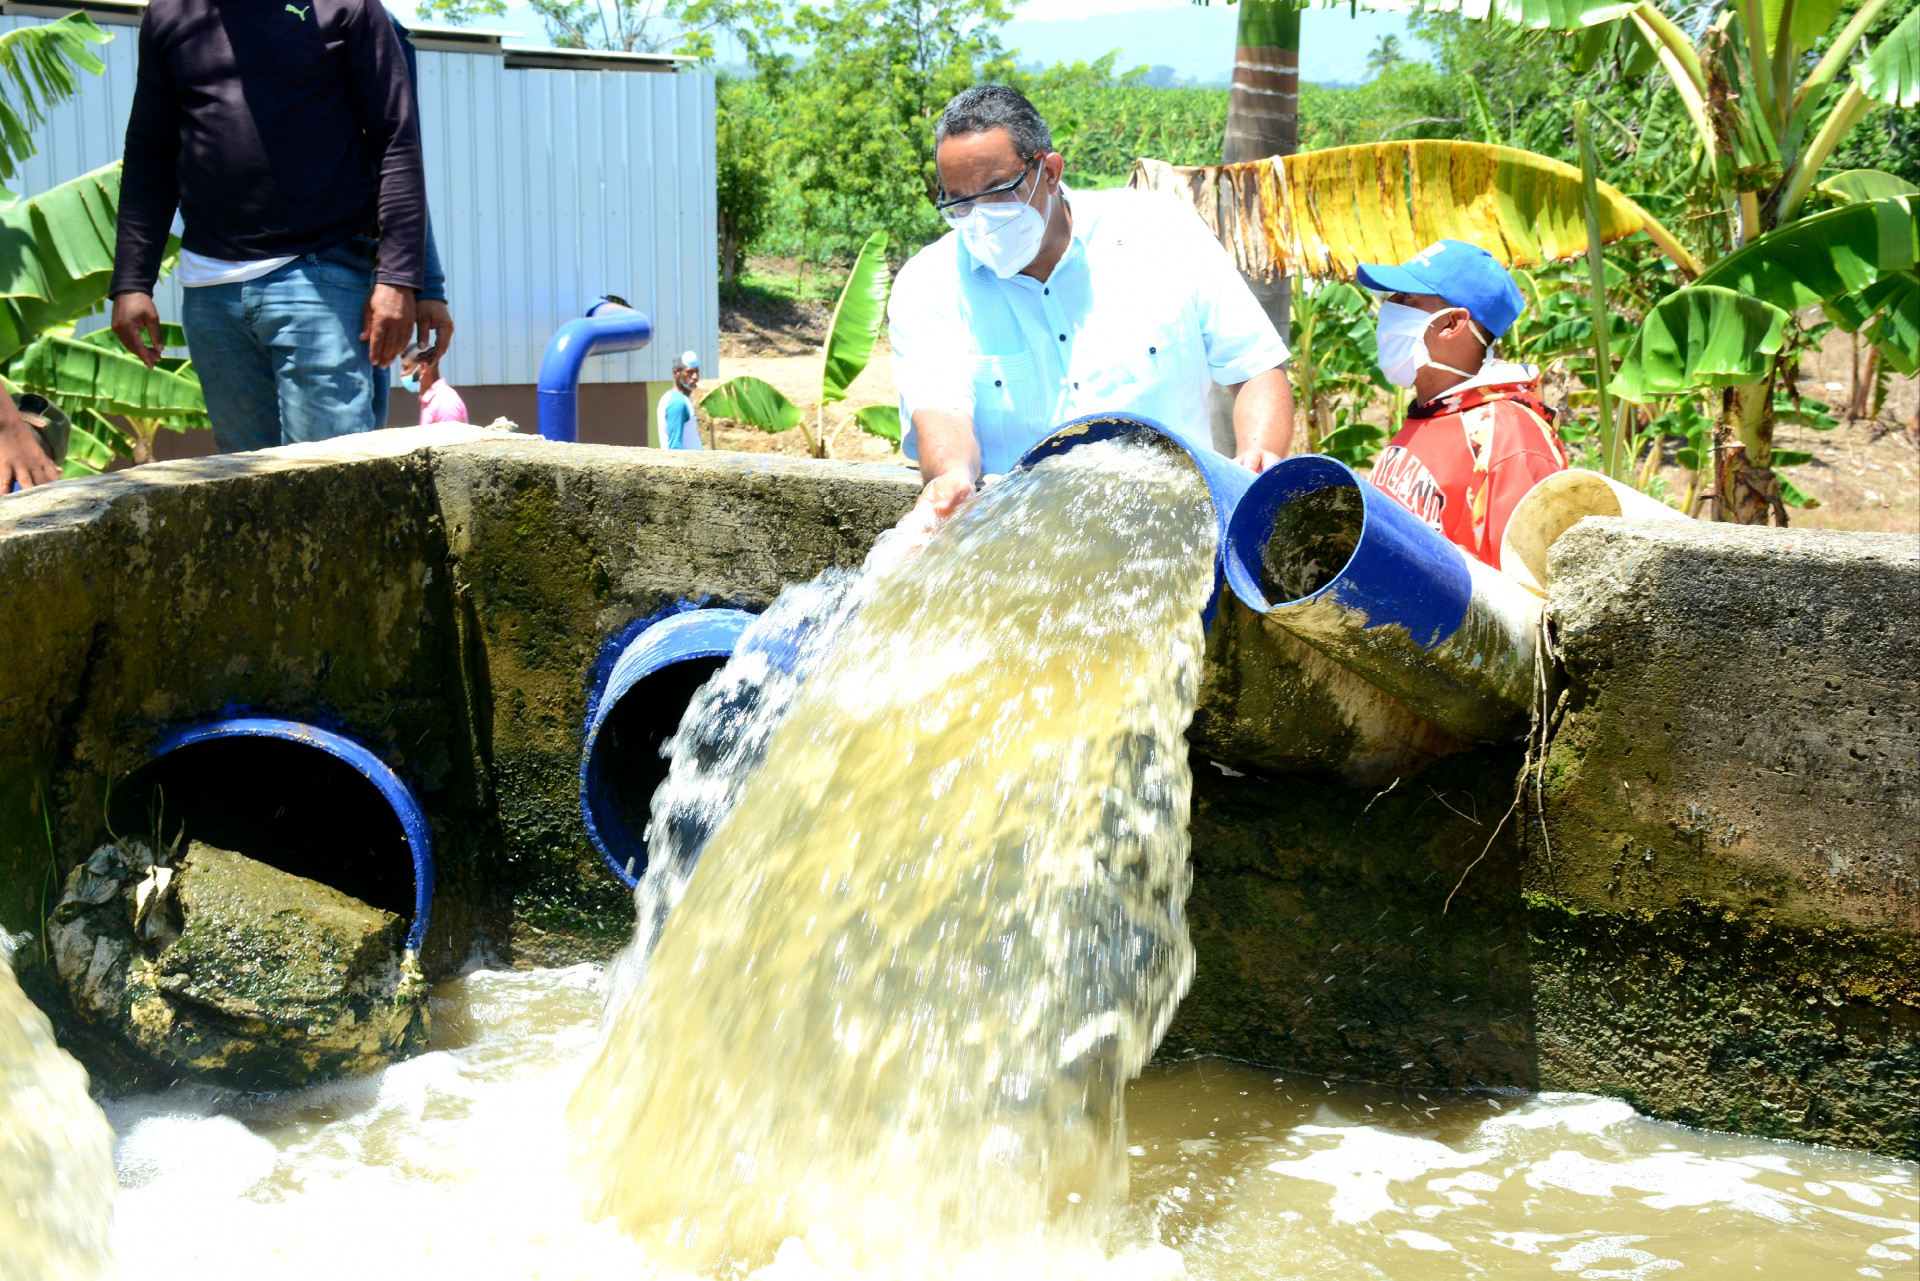 REPÚBLICA DOMINICANA: Agua en cantidad para productores de arroz de La Vega; Gobierno entrega tres electrobombas que impulsarán 7,500 galones por minuto